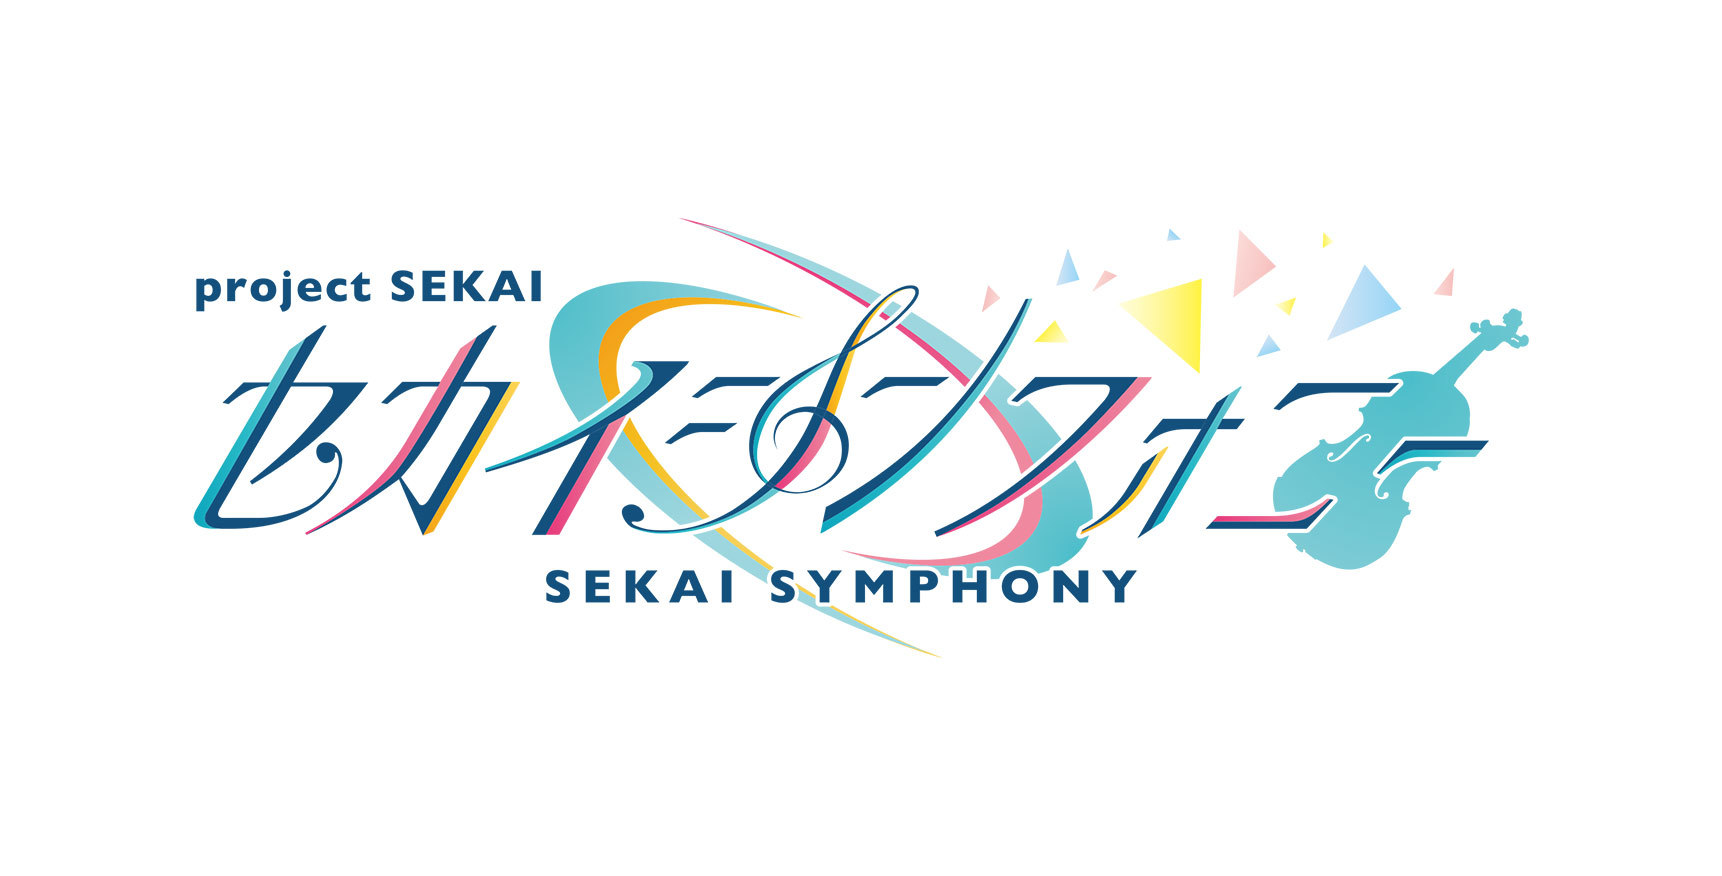 プロジェクトセカイのオーケストラコンサート「セカイシンフォニー」開催決定‼ | セカイシンフォニー | Warner Music Japan